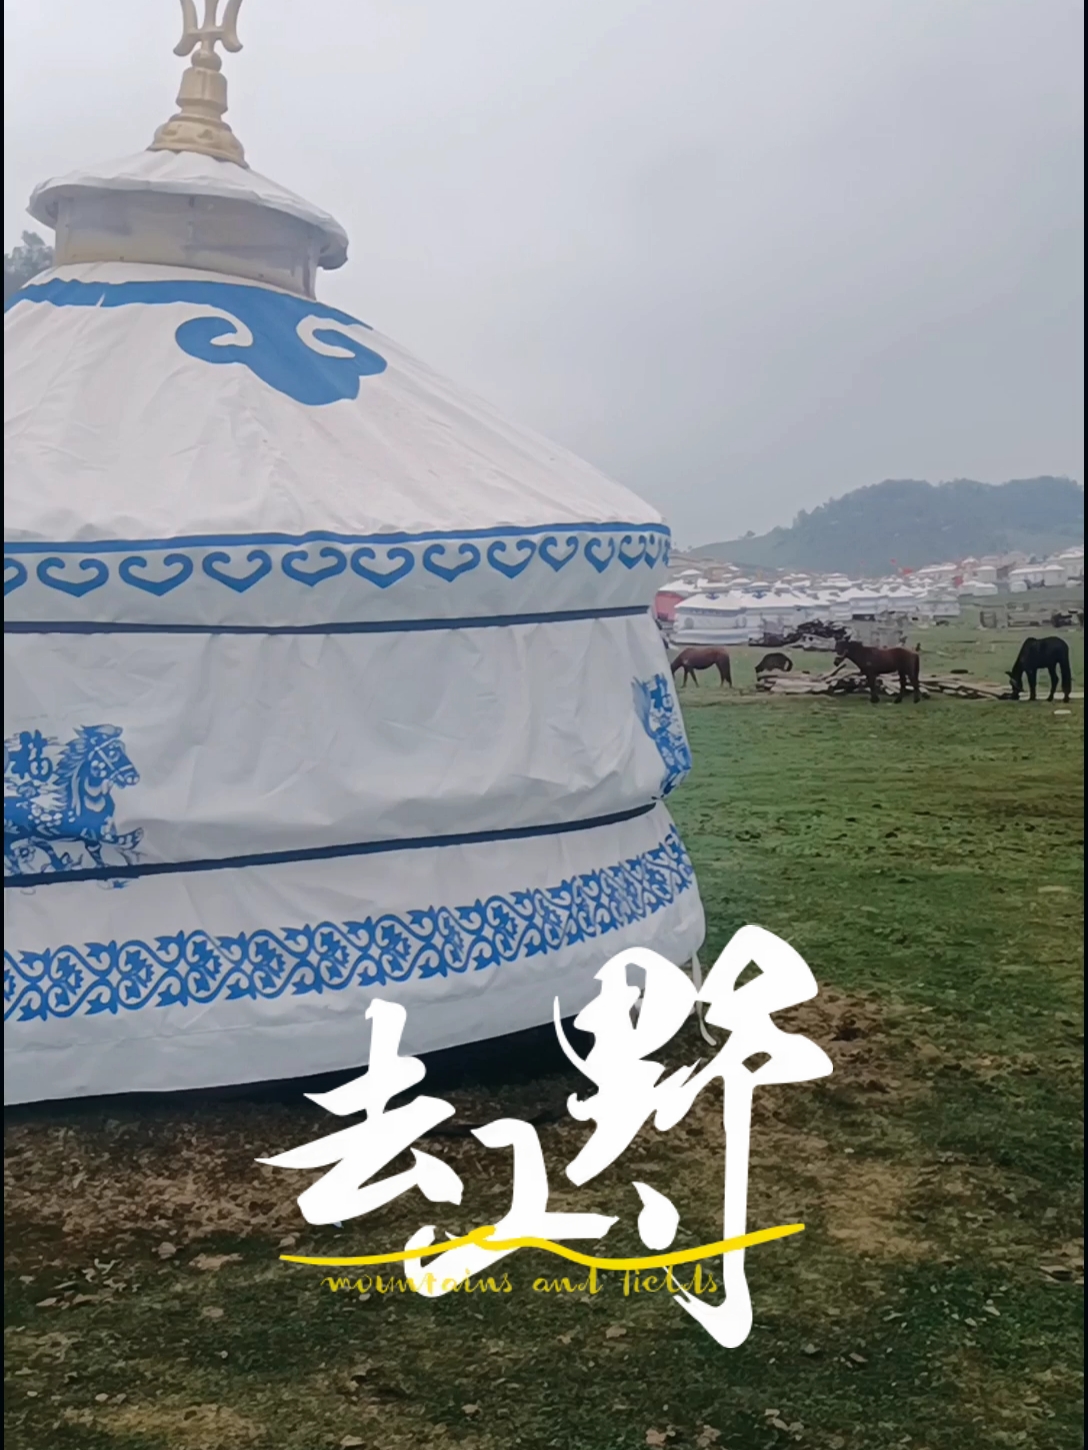 一直想在蒙古包里住一晚体验牧民的感觉，这里有各种各样大小的包，感觉不错[Tiptop]